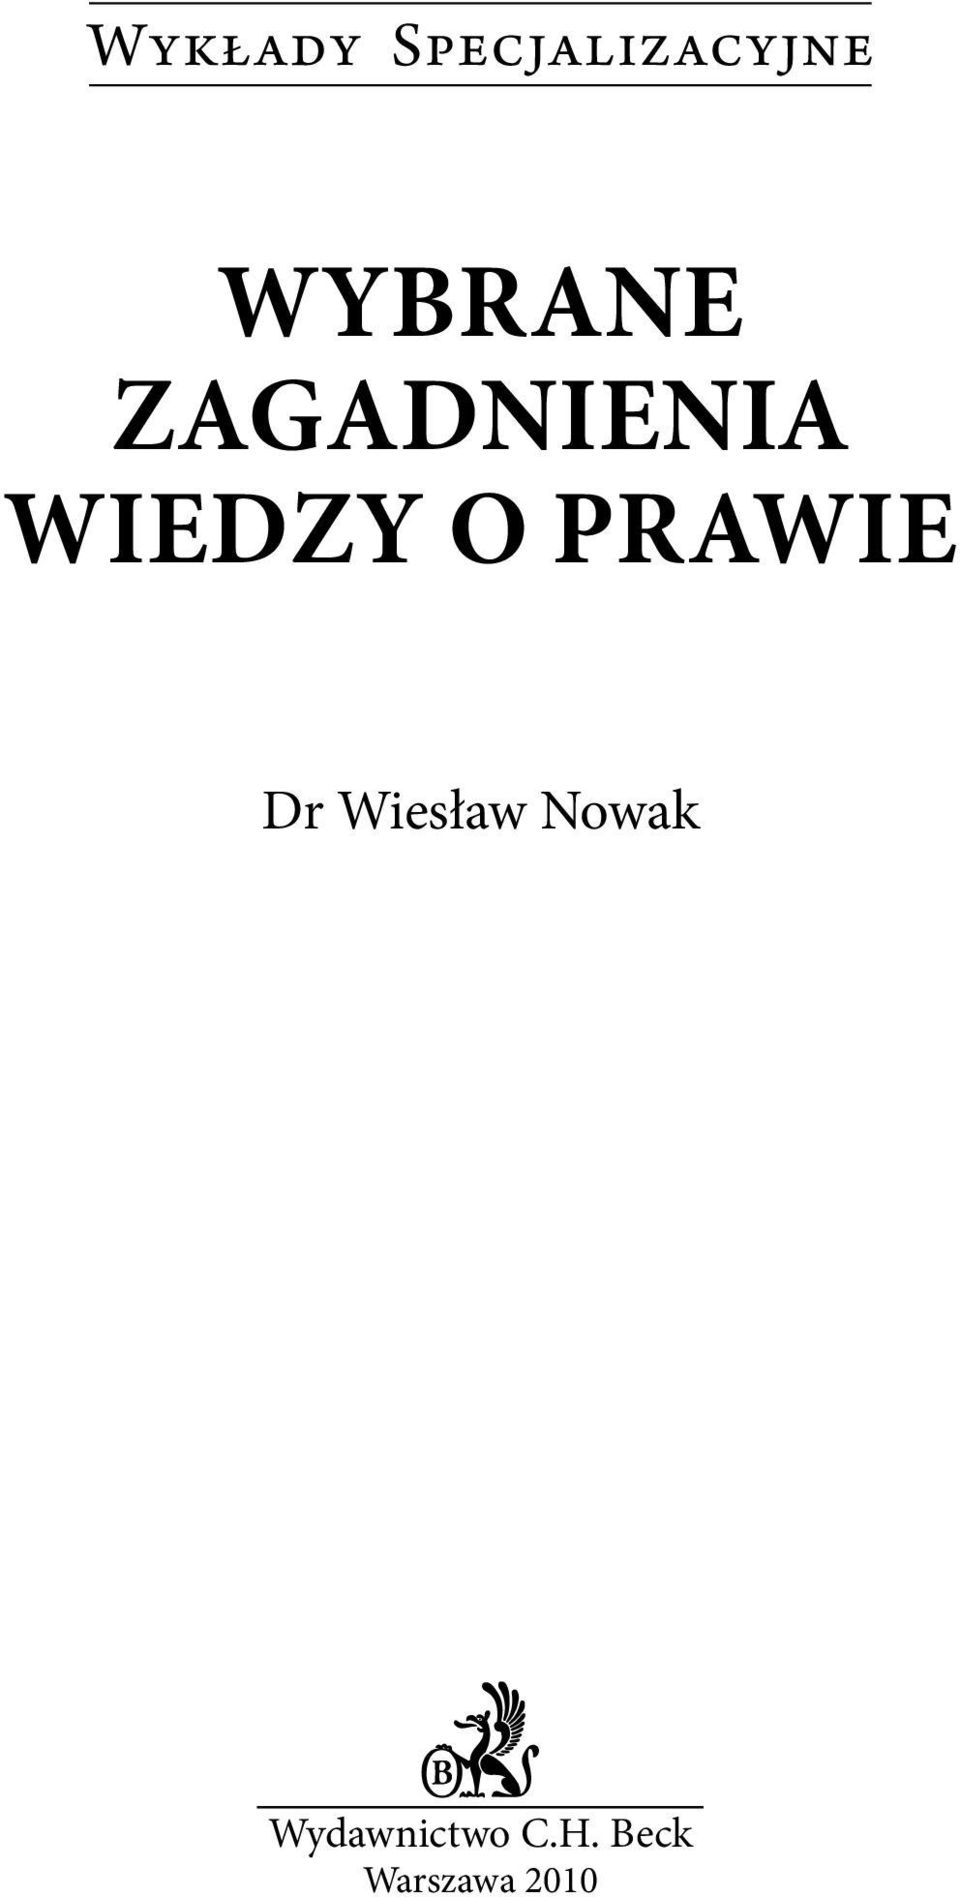 O PRAWIE Dr Wiesław Nowak